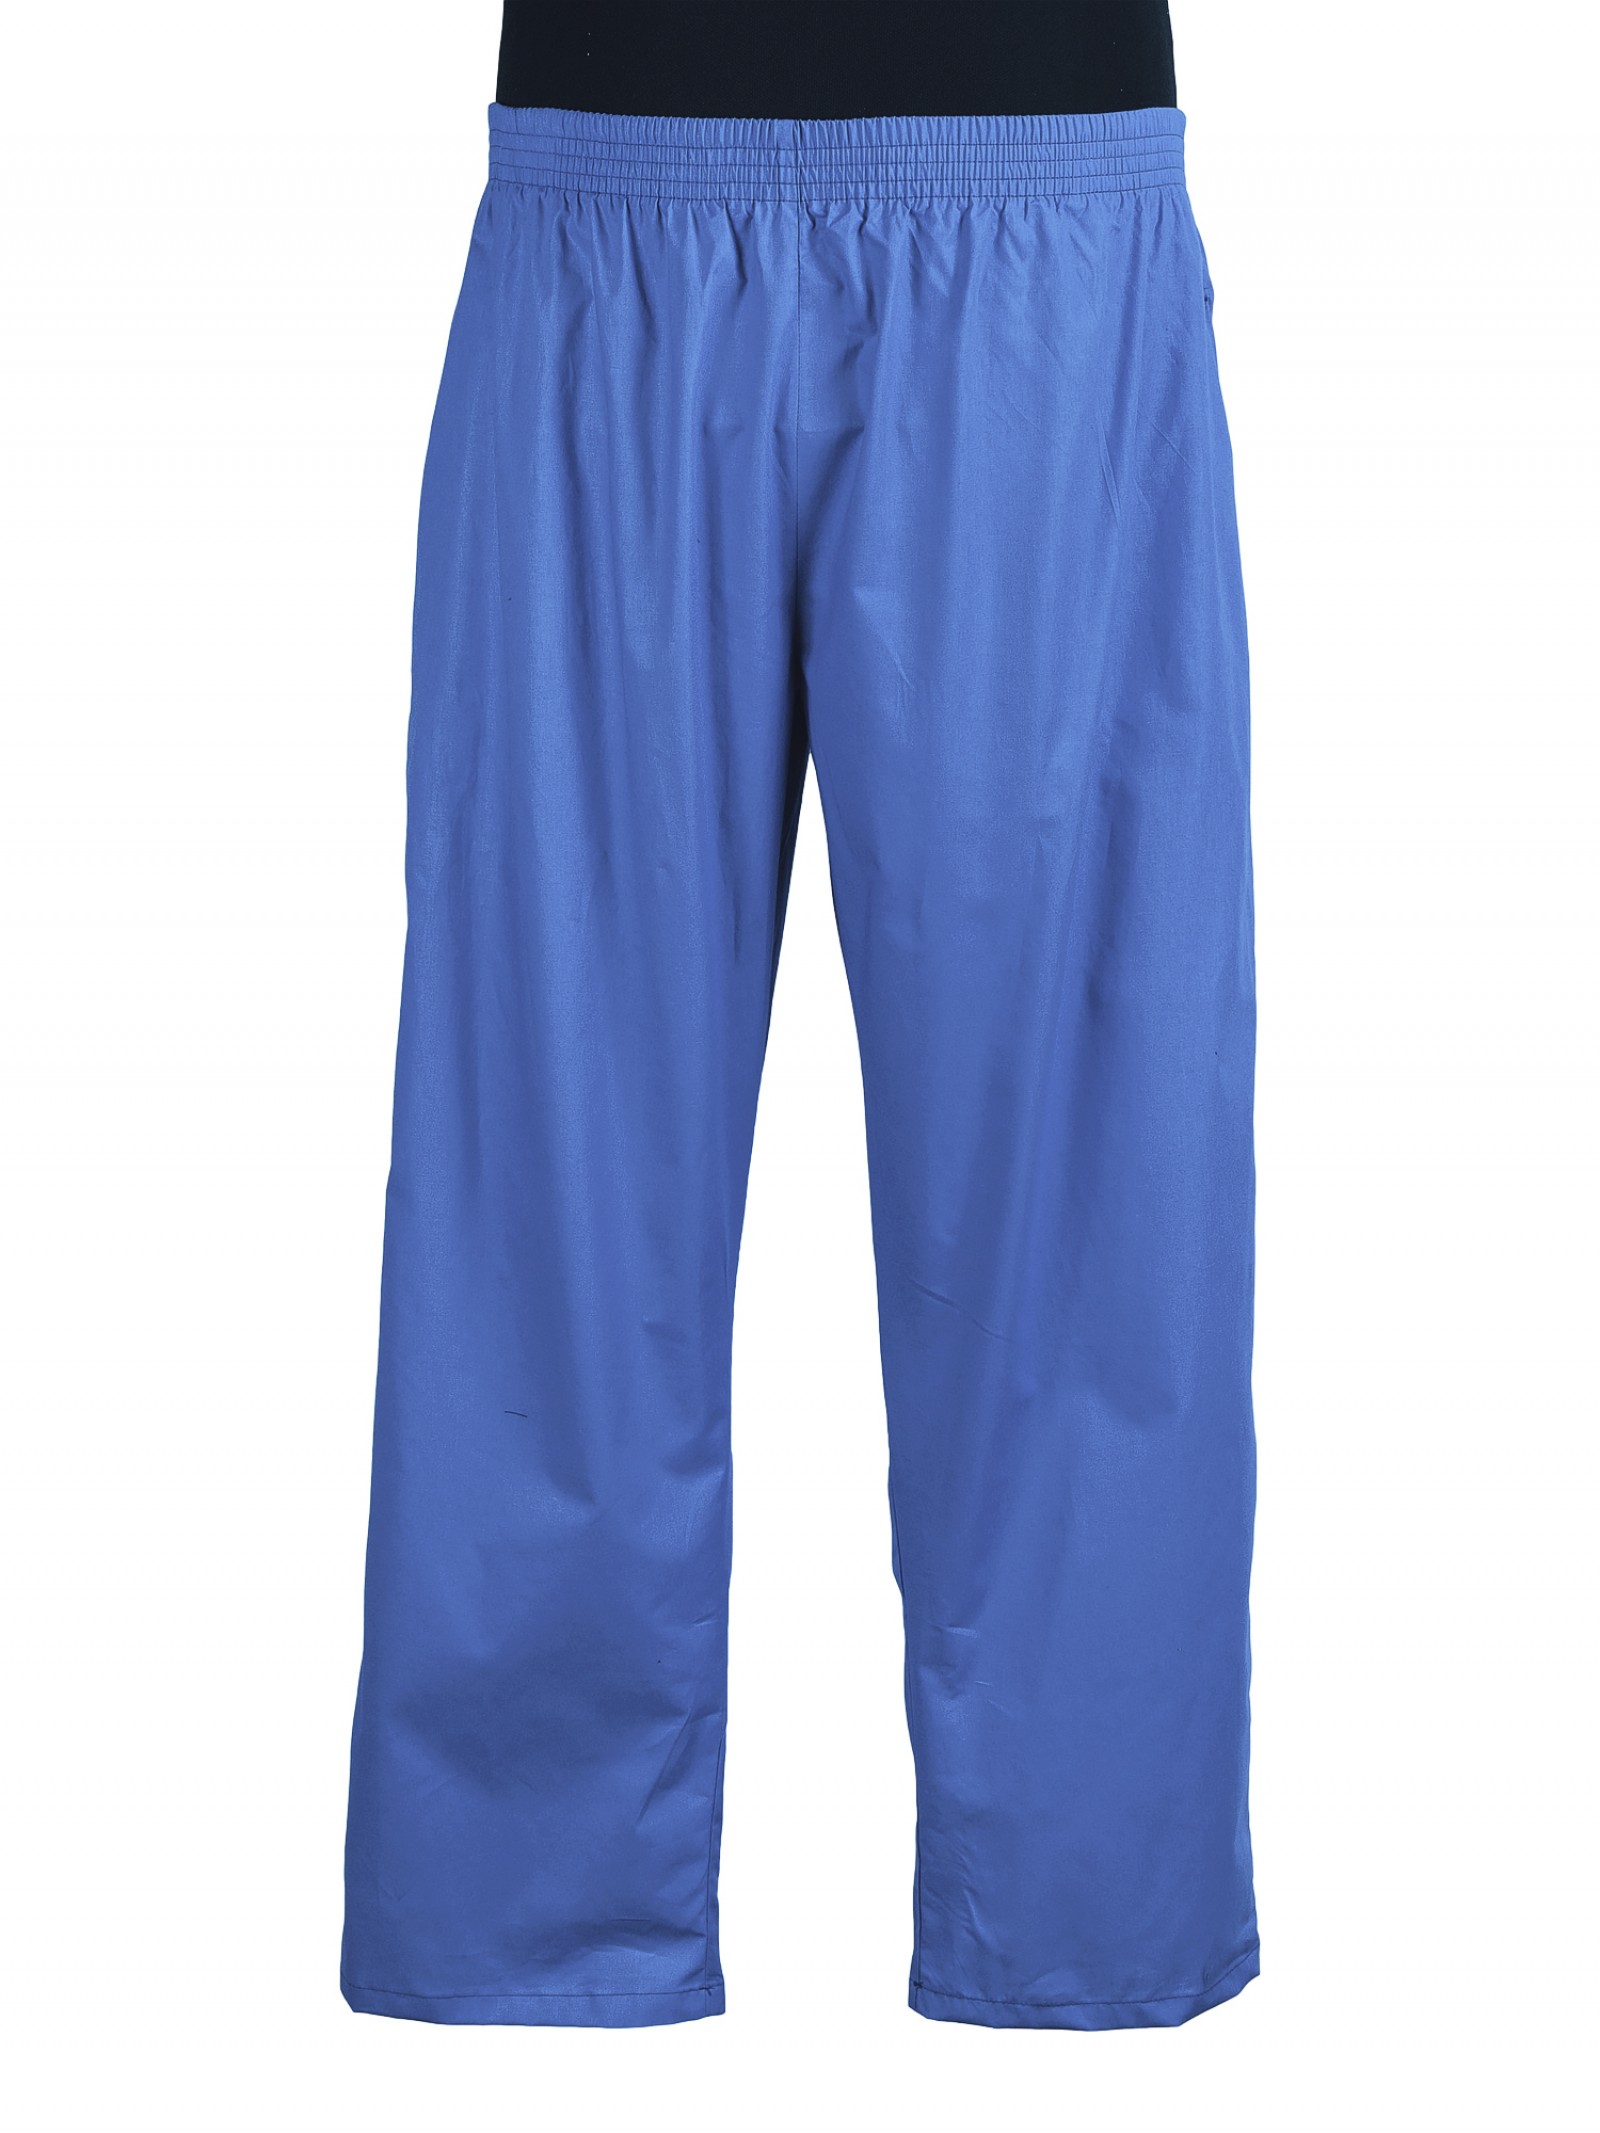 Легкие брюки на резинке. Легкие брюки. Спортивные брюки синие на резинке из хлопка. Лёгкие брюки на резинке. Прямые легкие брюки на резинке.